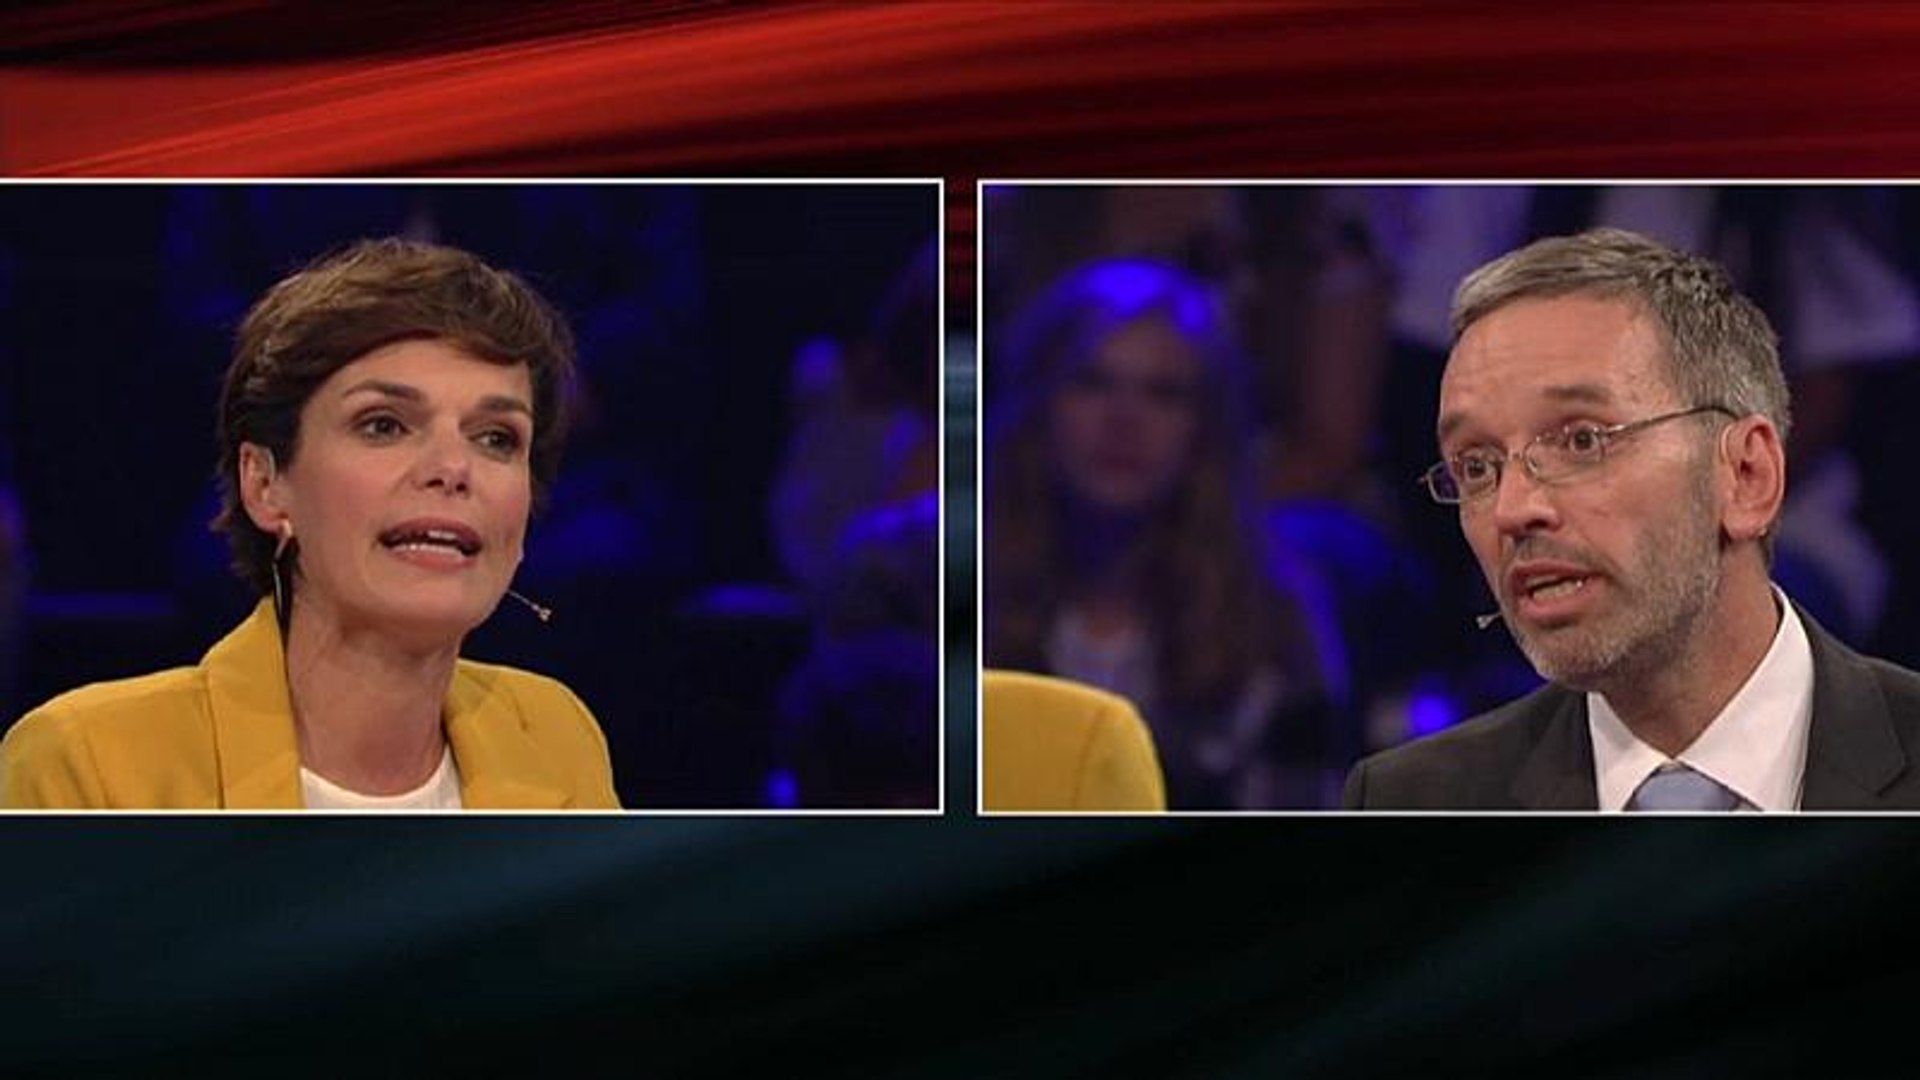 Vor Österreich-Wahl: Erster Schlagabtausch im TV-Duell